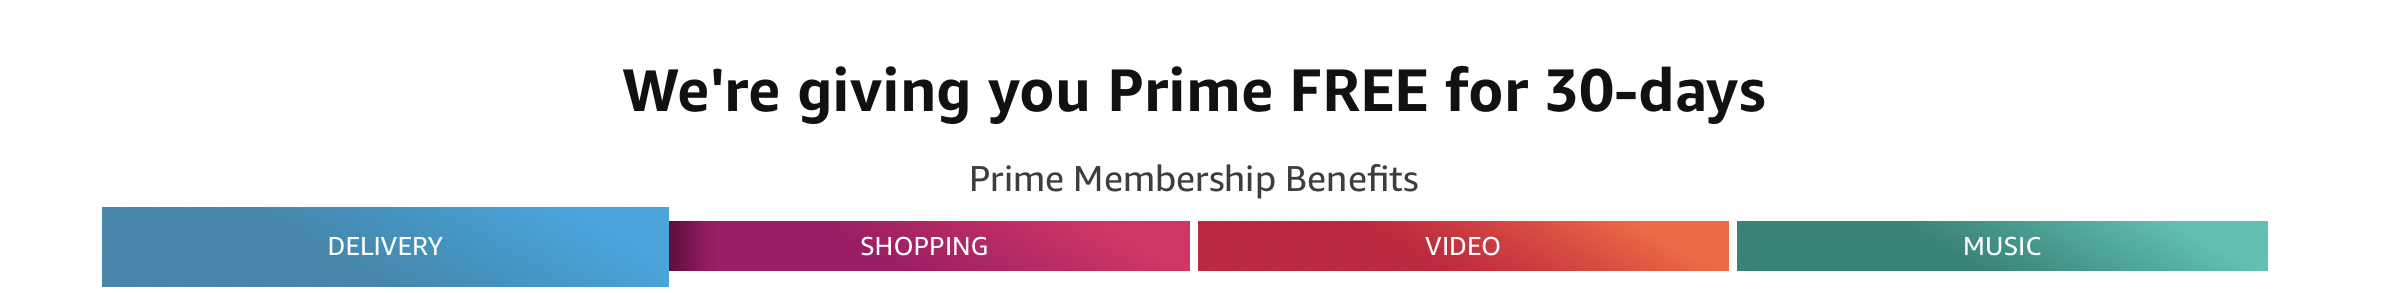 Amazon prime free trial